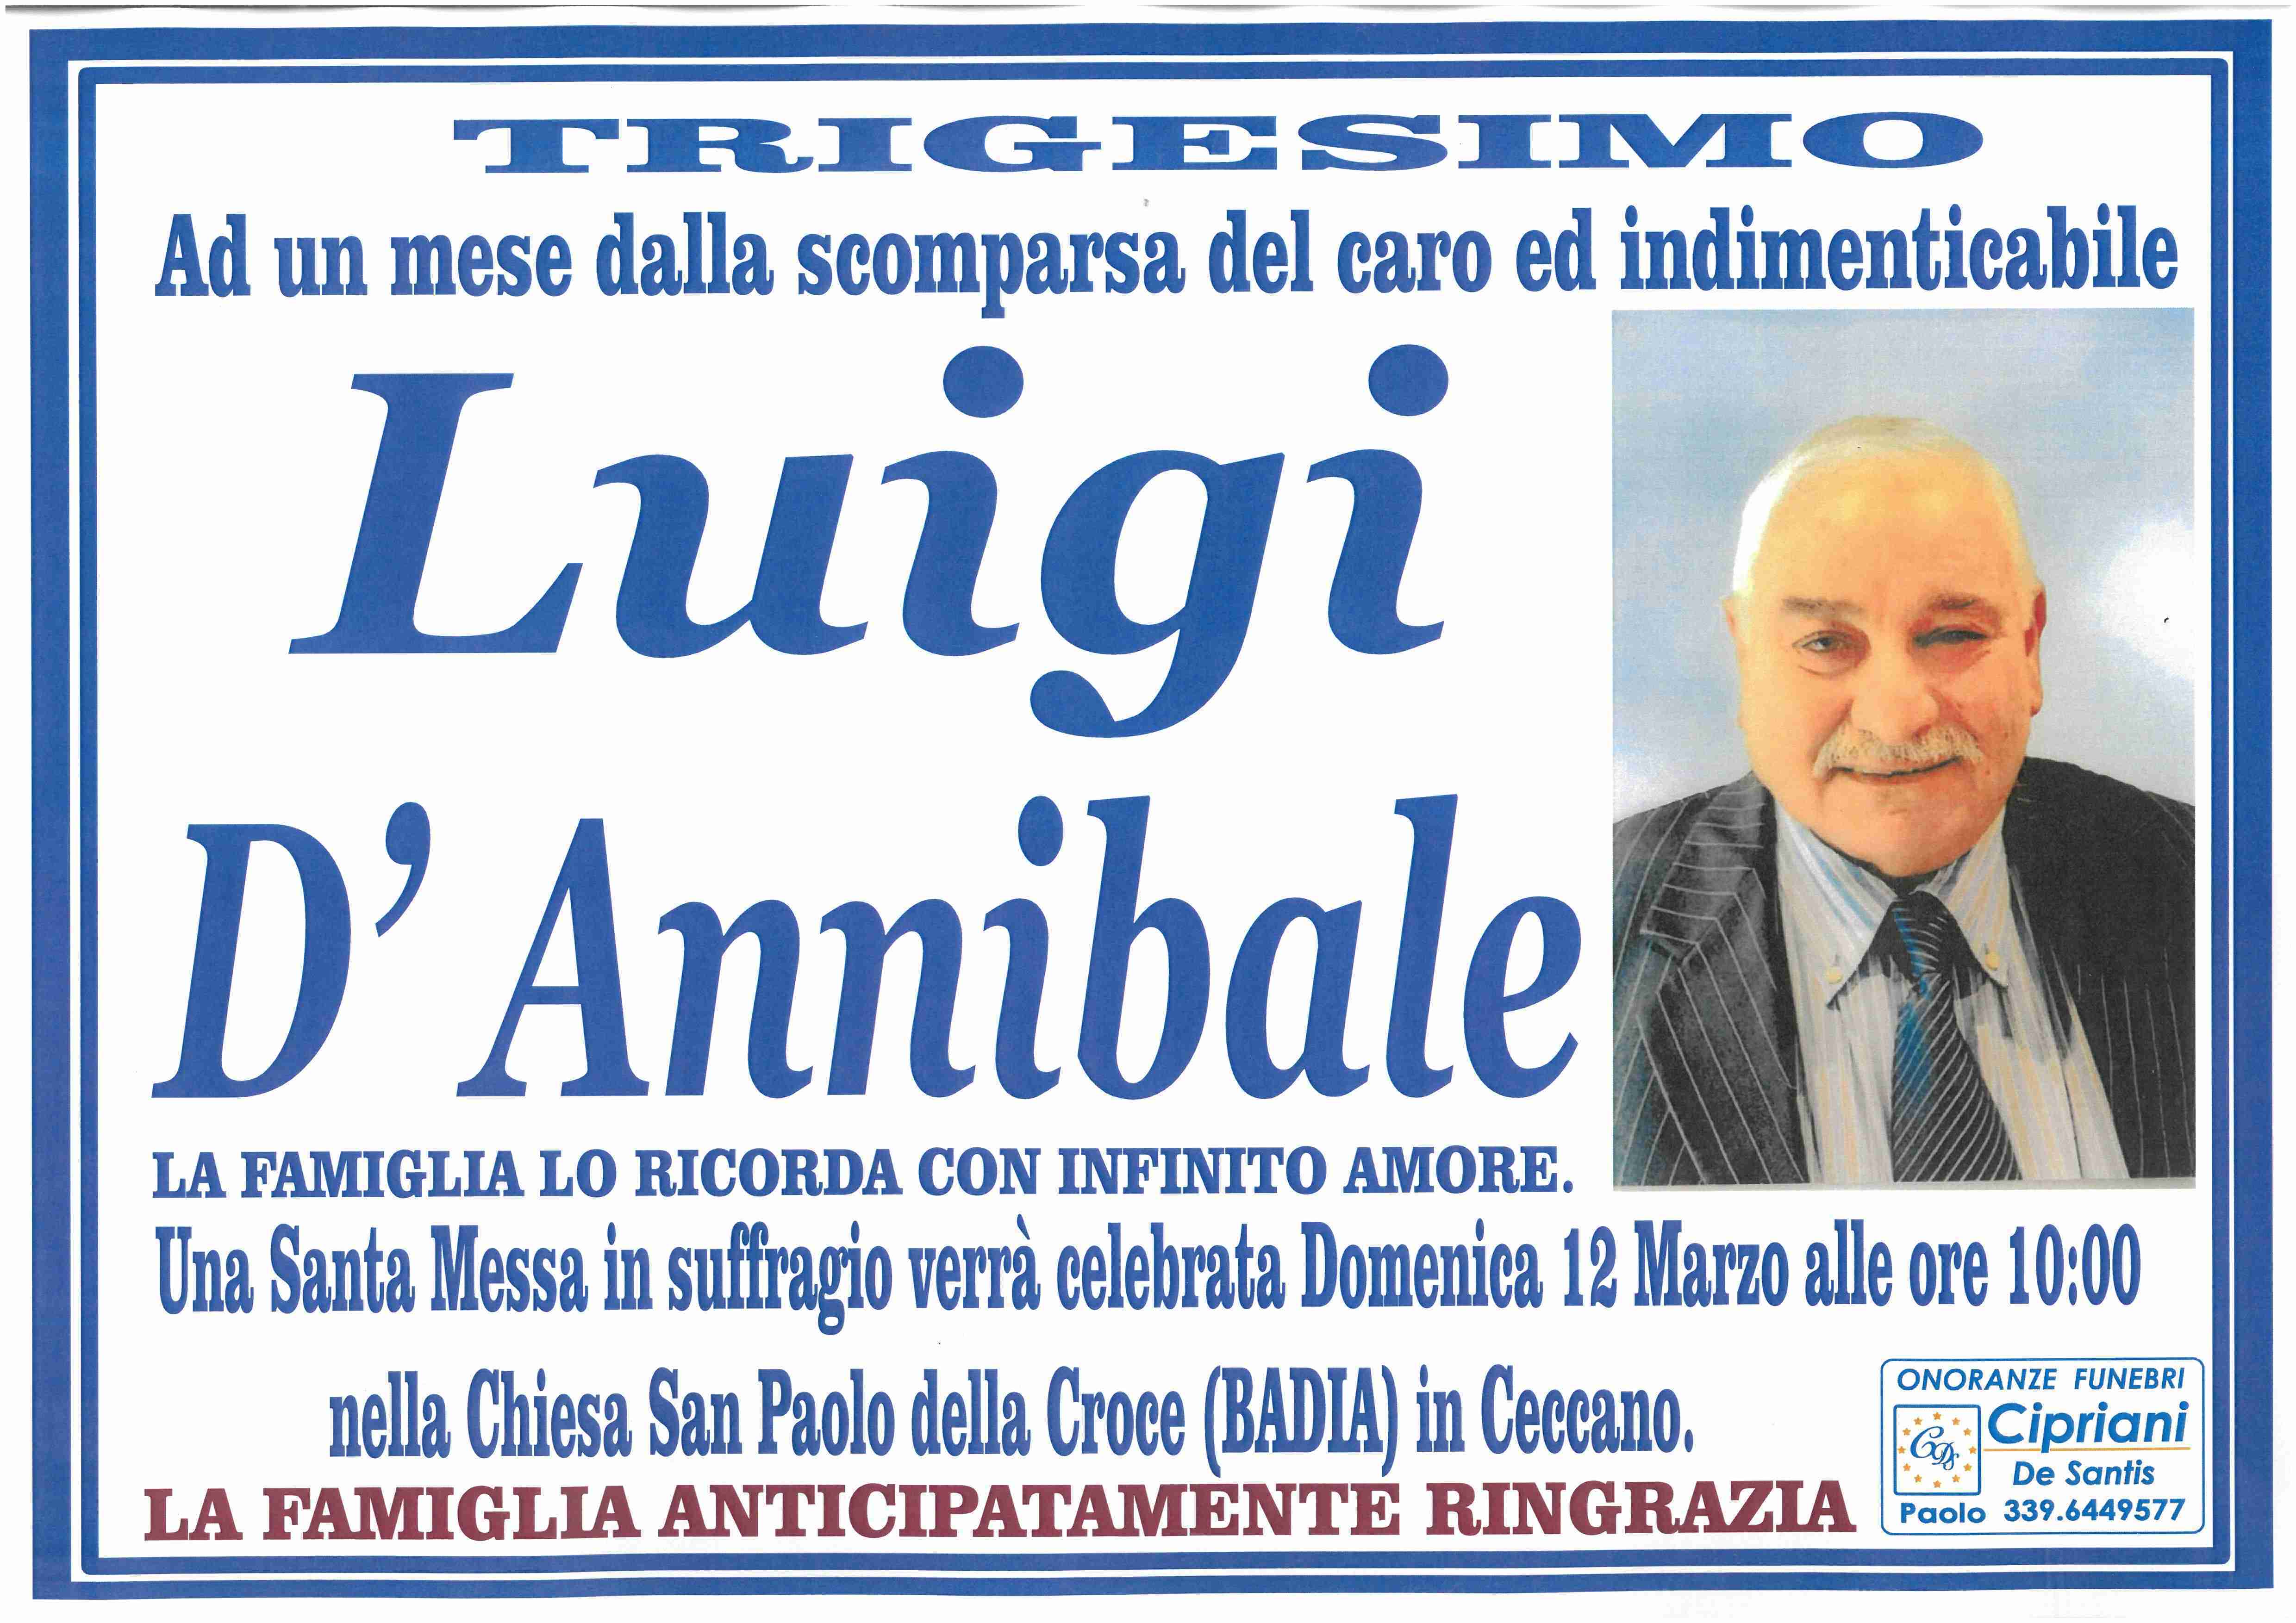 Luigi D'Annibale